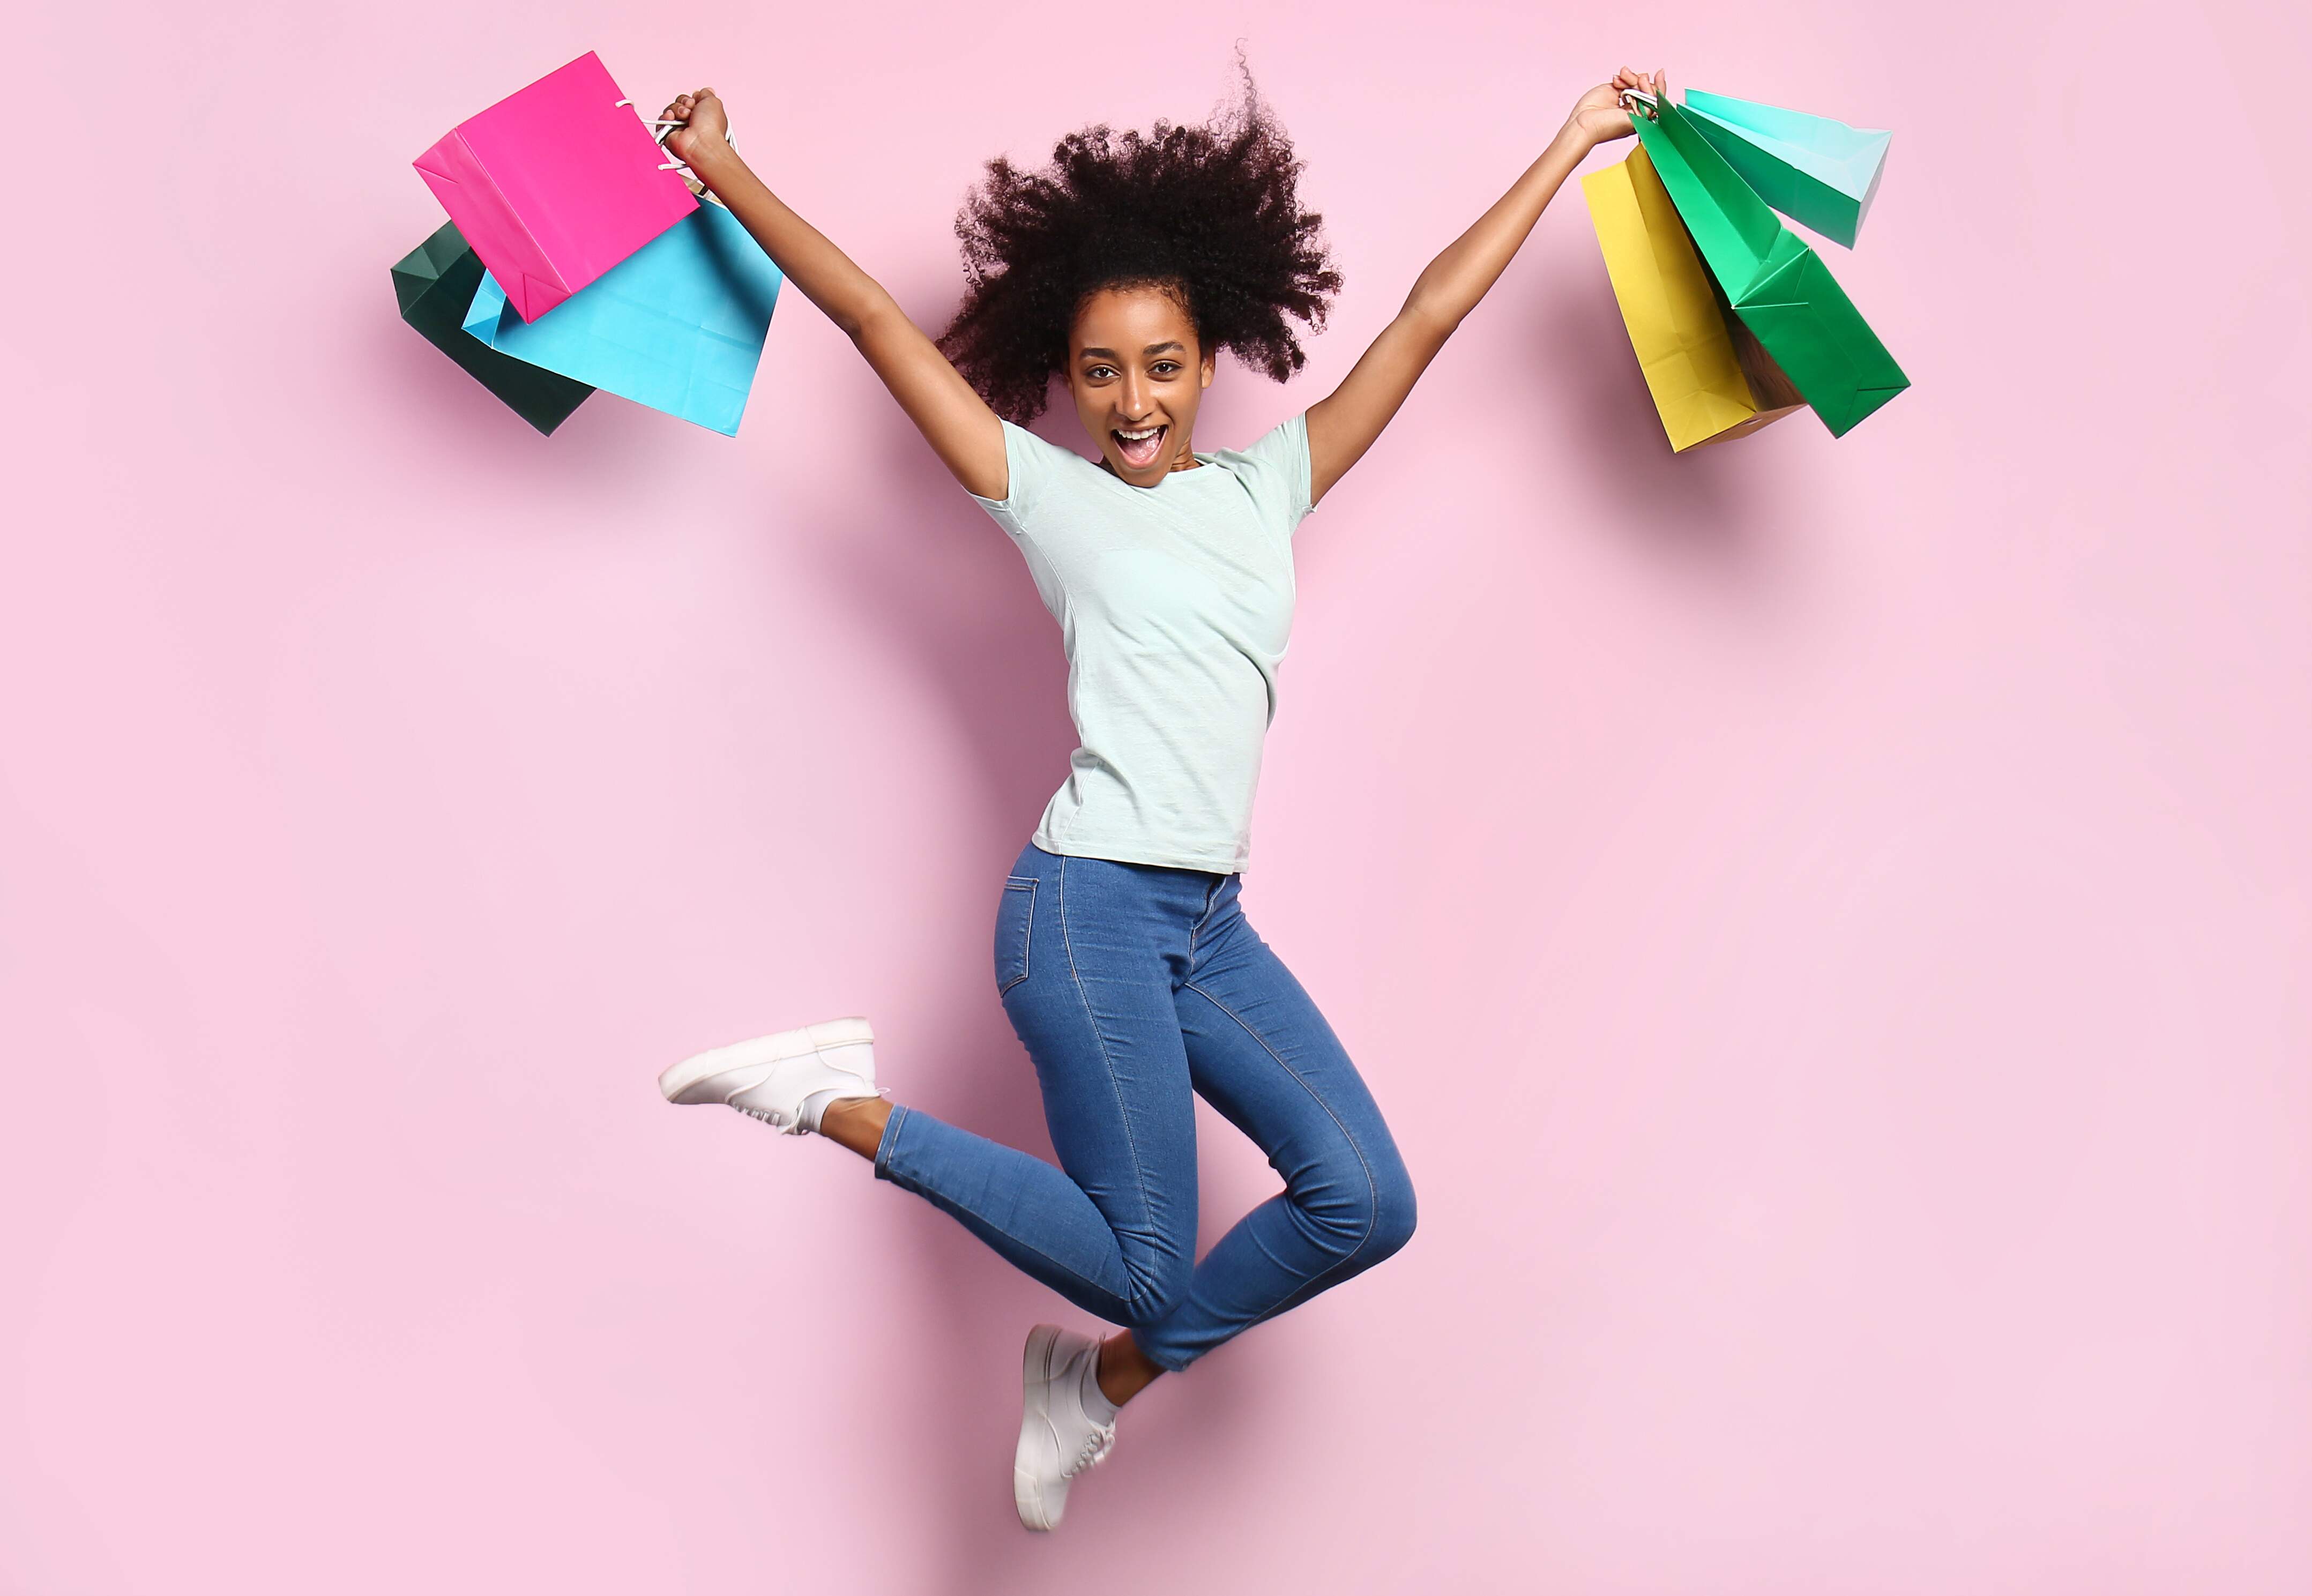 Mulher negra saltando feliz com sacolas de compras coloridas nas duas mãos em um fundo rosa